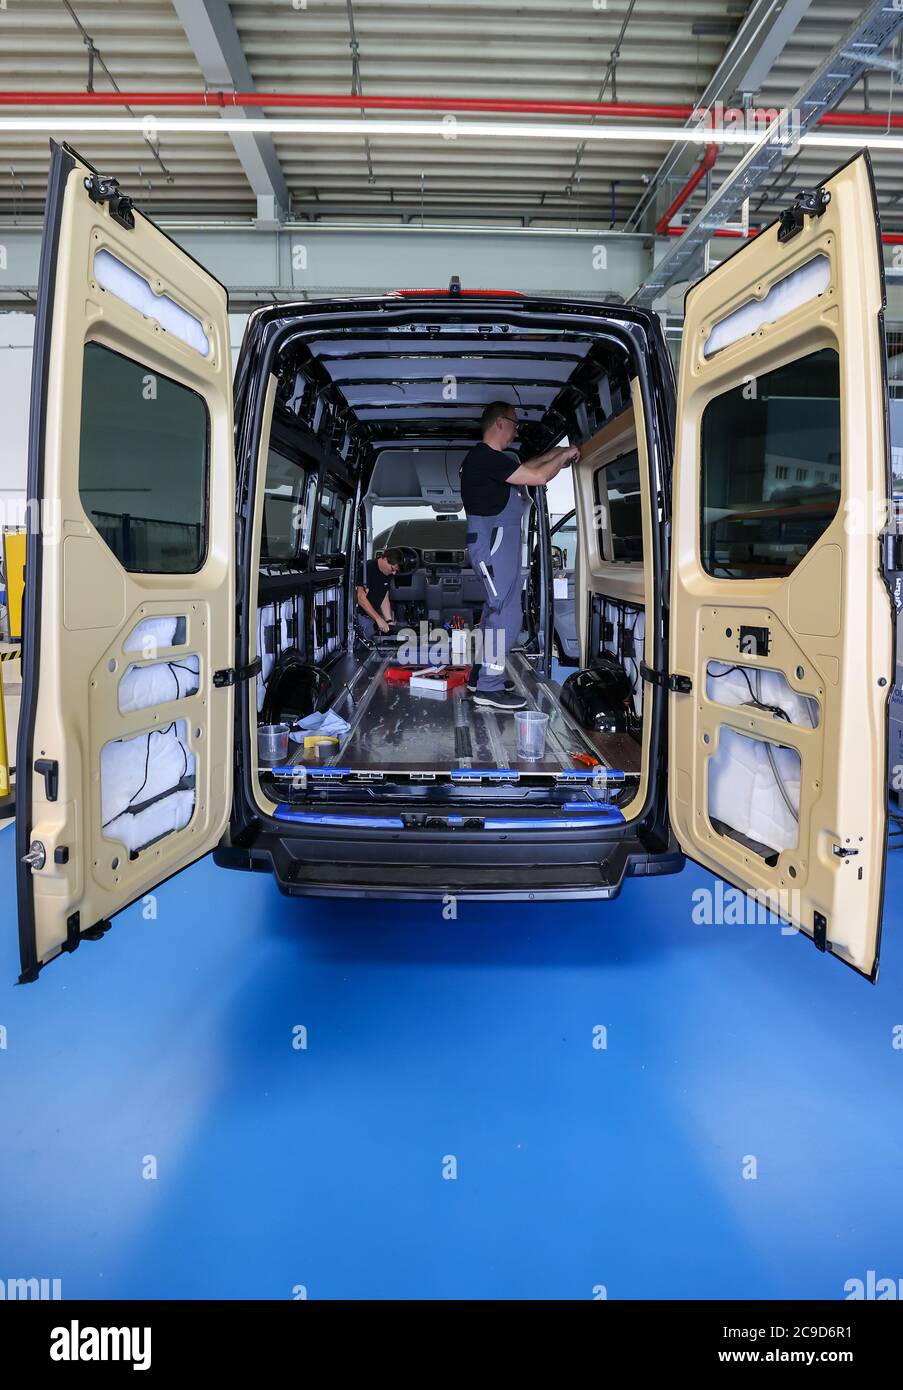 16 juillet 2020, Saxe, Plauen: Deux employés du MAN bus modification Center (BMC) modernisent un minibus électrique eTGE avec une garniture intérieure spéciale pour le transport de passagers. L'éclairage d'ambiance rouge ou bleu crée une atmosphère chaude ou froide et contribue ainsi à réduire la quantité d'air conditionné requise de deux degrés. Dans un véhicule électrique, cela a un effet direct sur la gamme. MAN, le carrossier-constructeur de bus basé à Plauen, se penche positivement sur les mois à venir après une baisse des ventes pendant la crise corona et la menace de coupures d'emplois dans l'entreprise. Grâce à l'accent mis sur la mobilité électrique et Banque D'Images